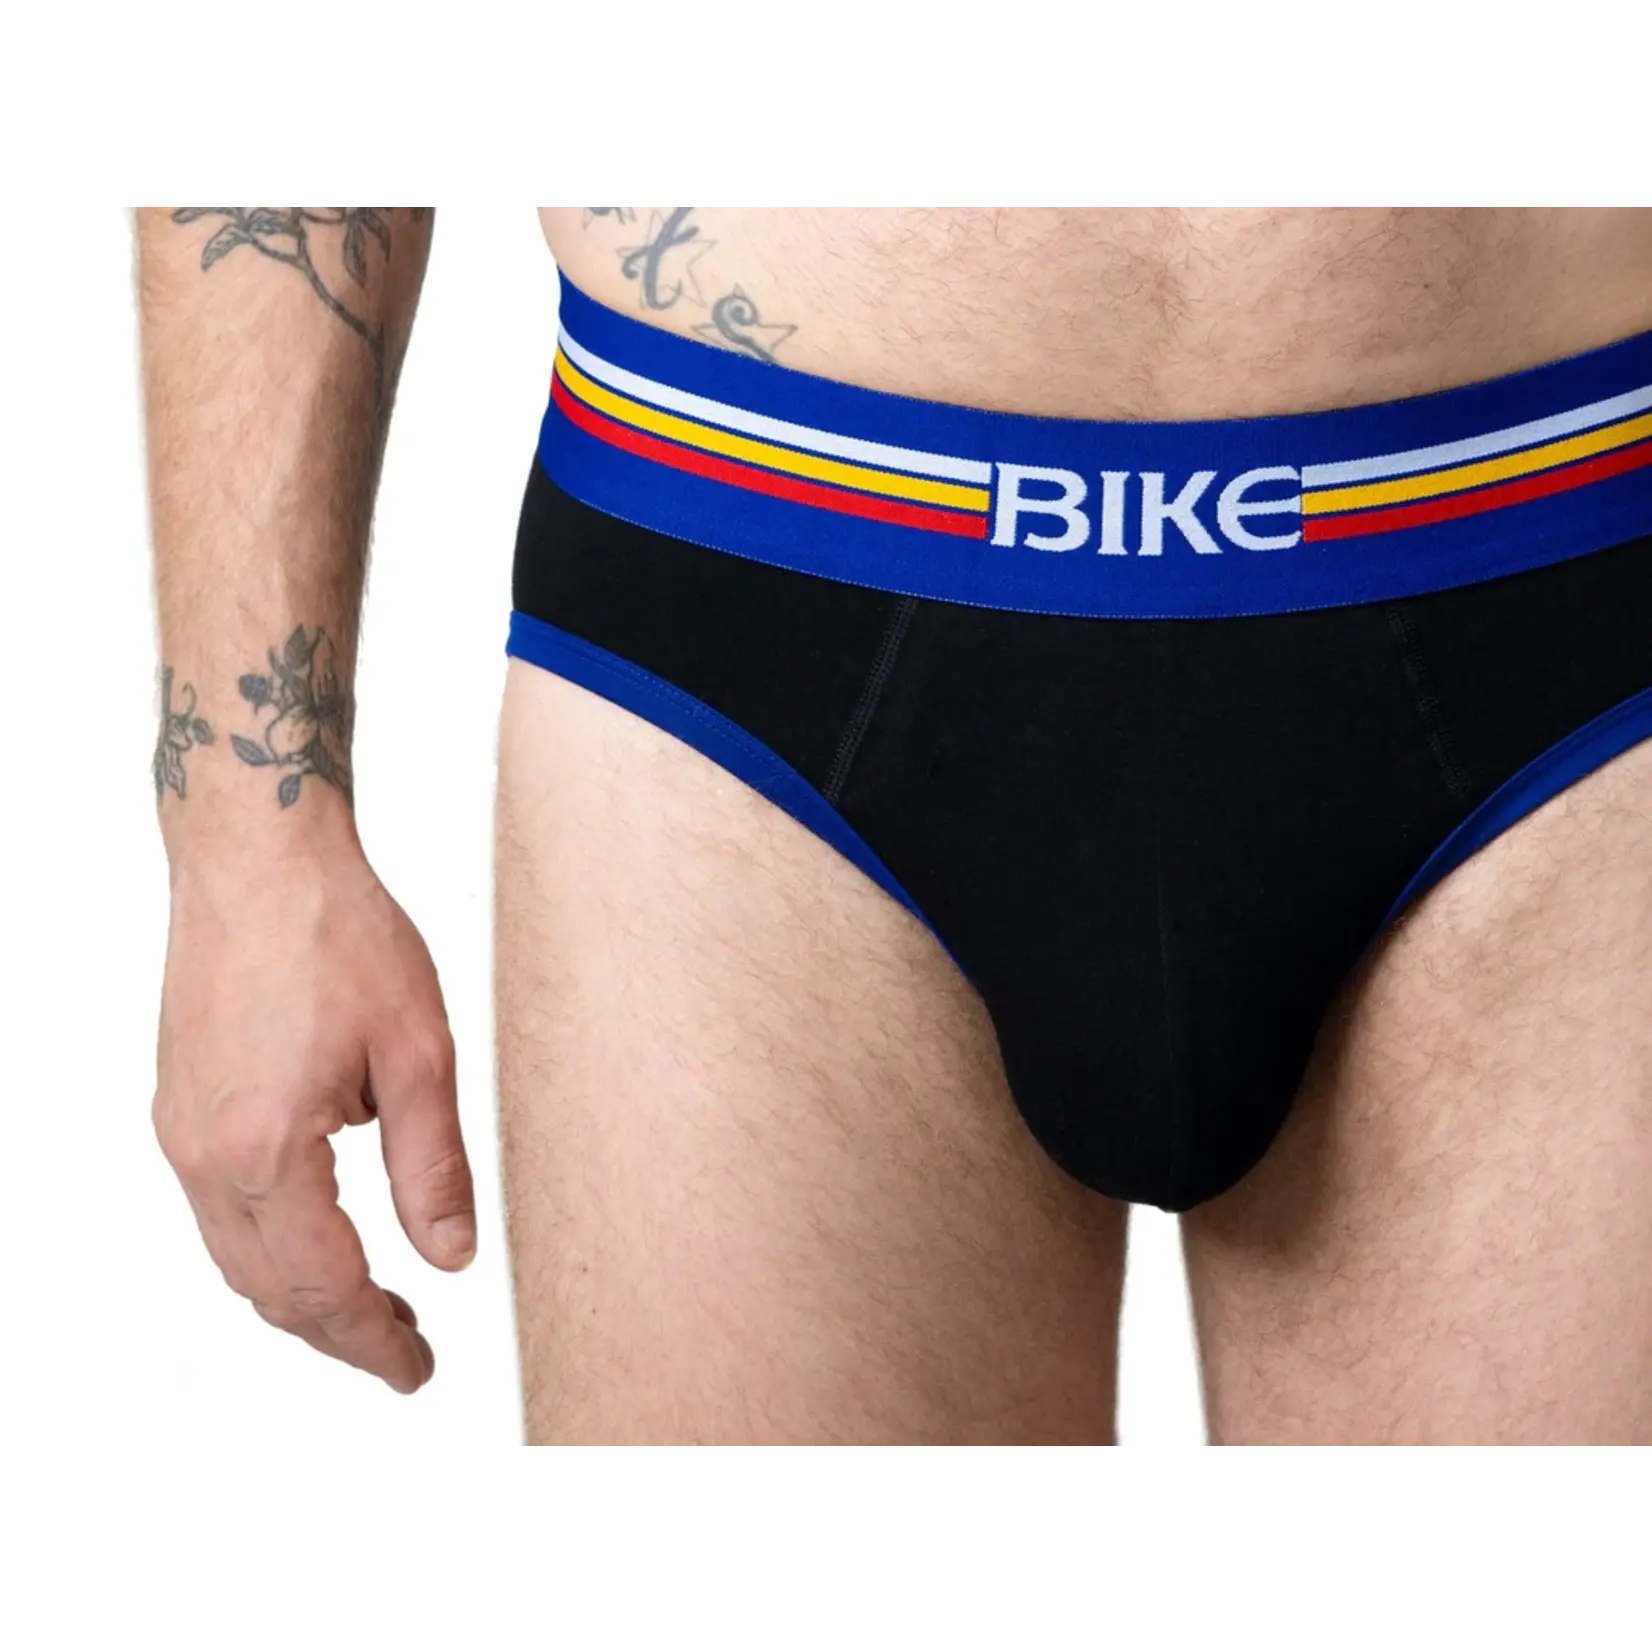 Bike Athletic BIKE Brief Underwear - Black/Red